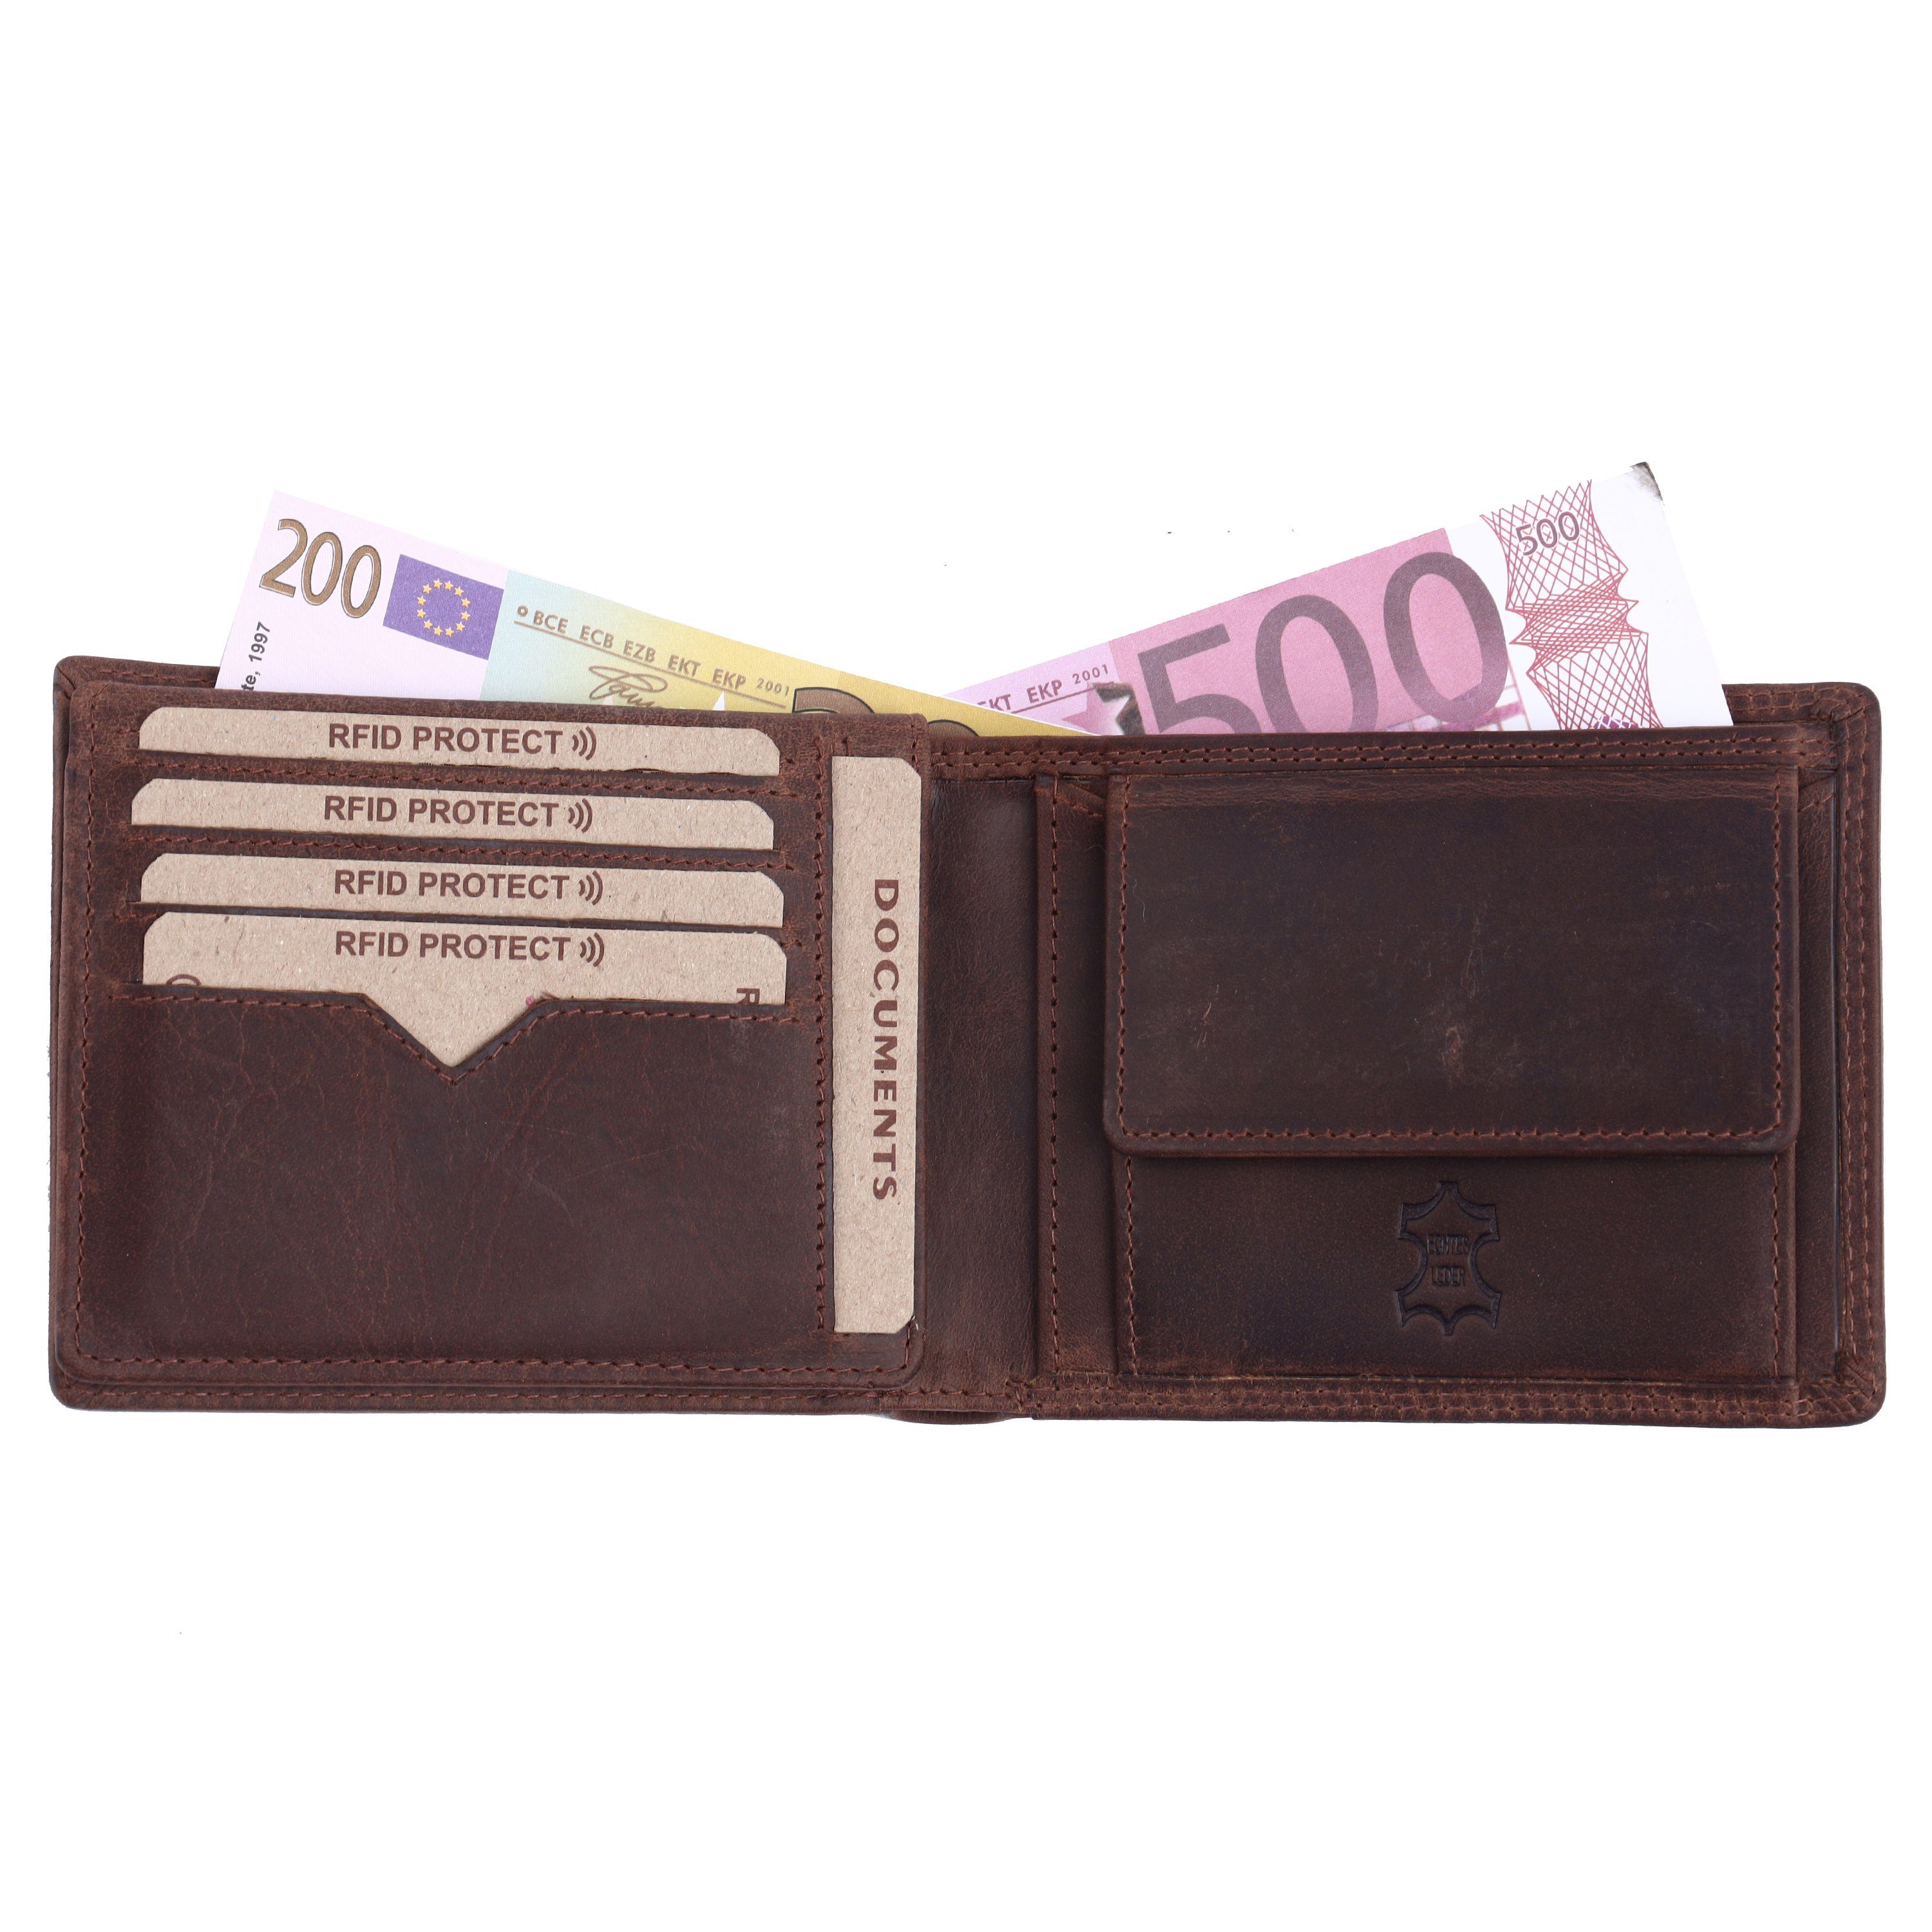 Mercano Geldbörse für Herren, Leder Doppelnaht, Vintage aus & 100% mit RFID-Schutz Geschenkbox dunkelbraune inkl